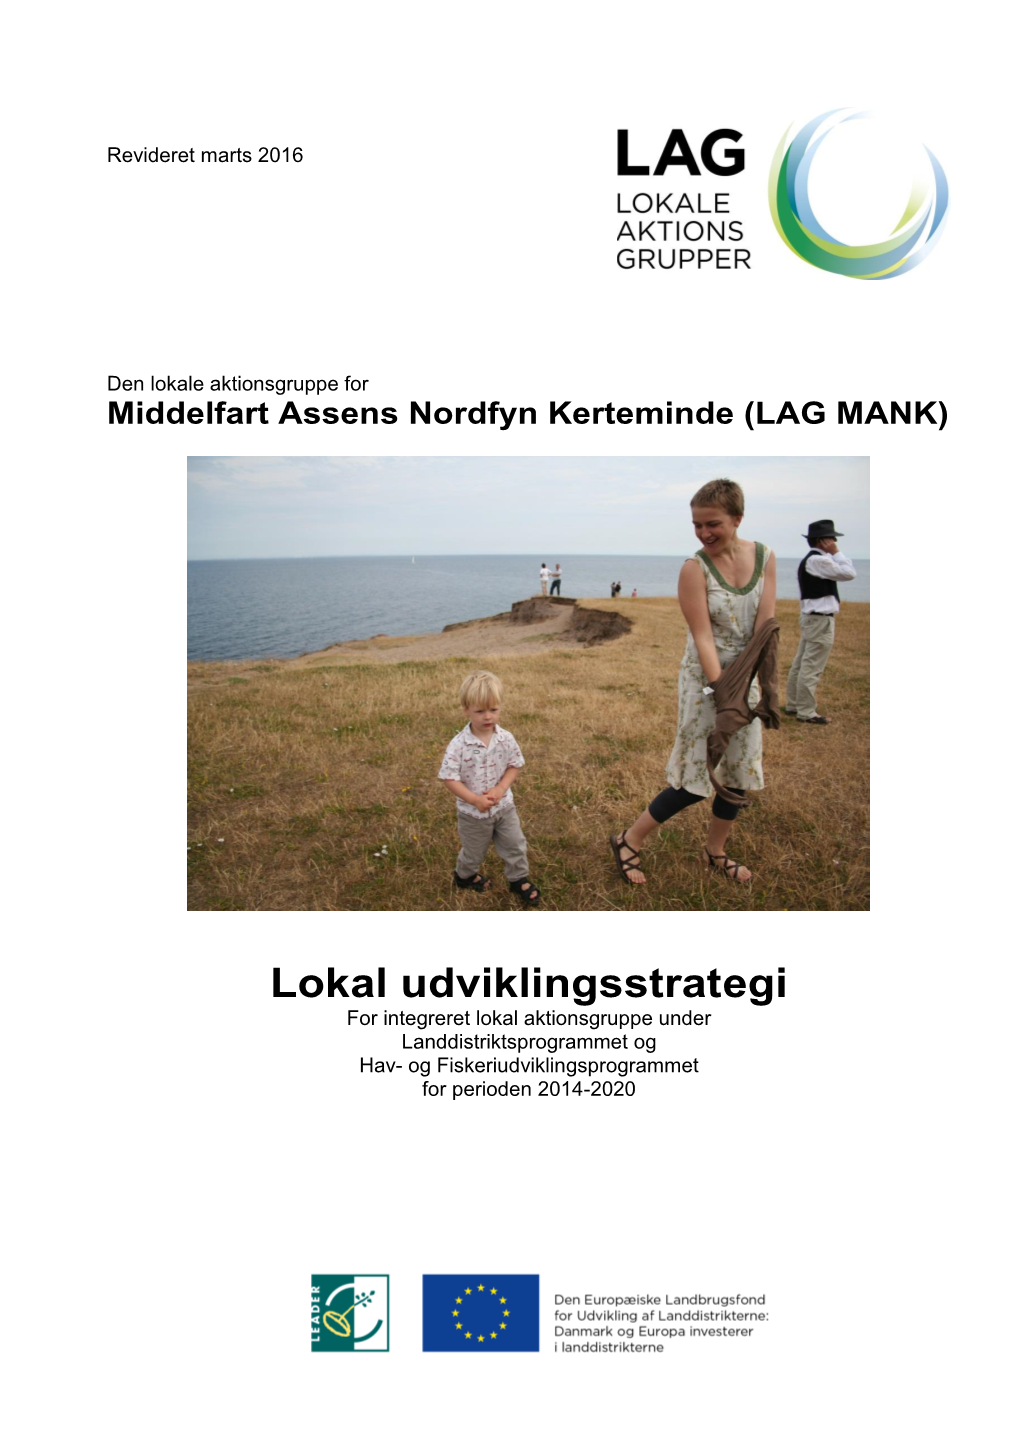 Lokal Udviklingsstrategi for Integreret Lokal Aktionsgruppe Under Landdistriktsprogrammet Og Hav- Og Fiskeriudviklingsprogrammet for Perioden 2014-2020